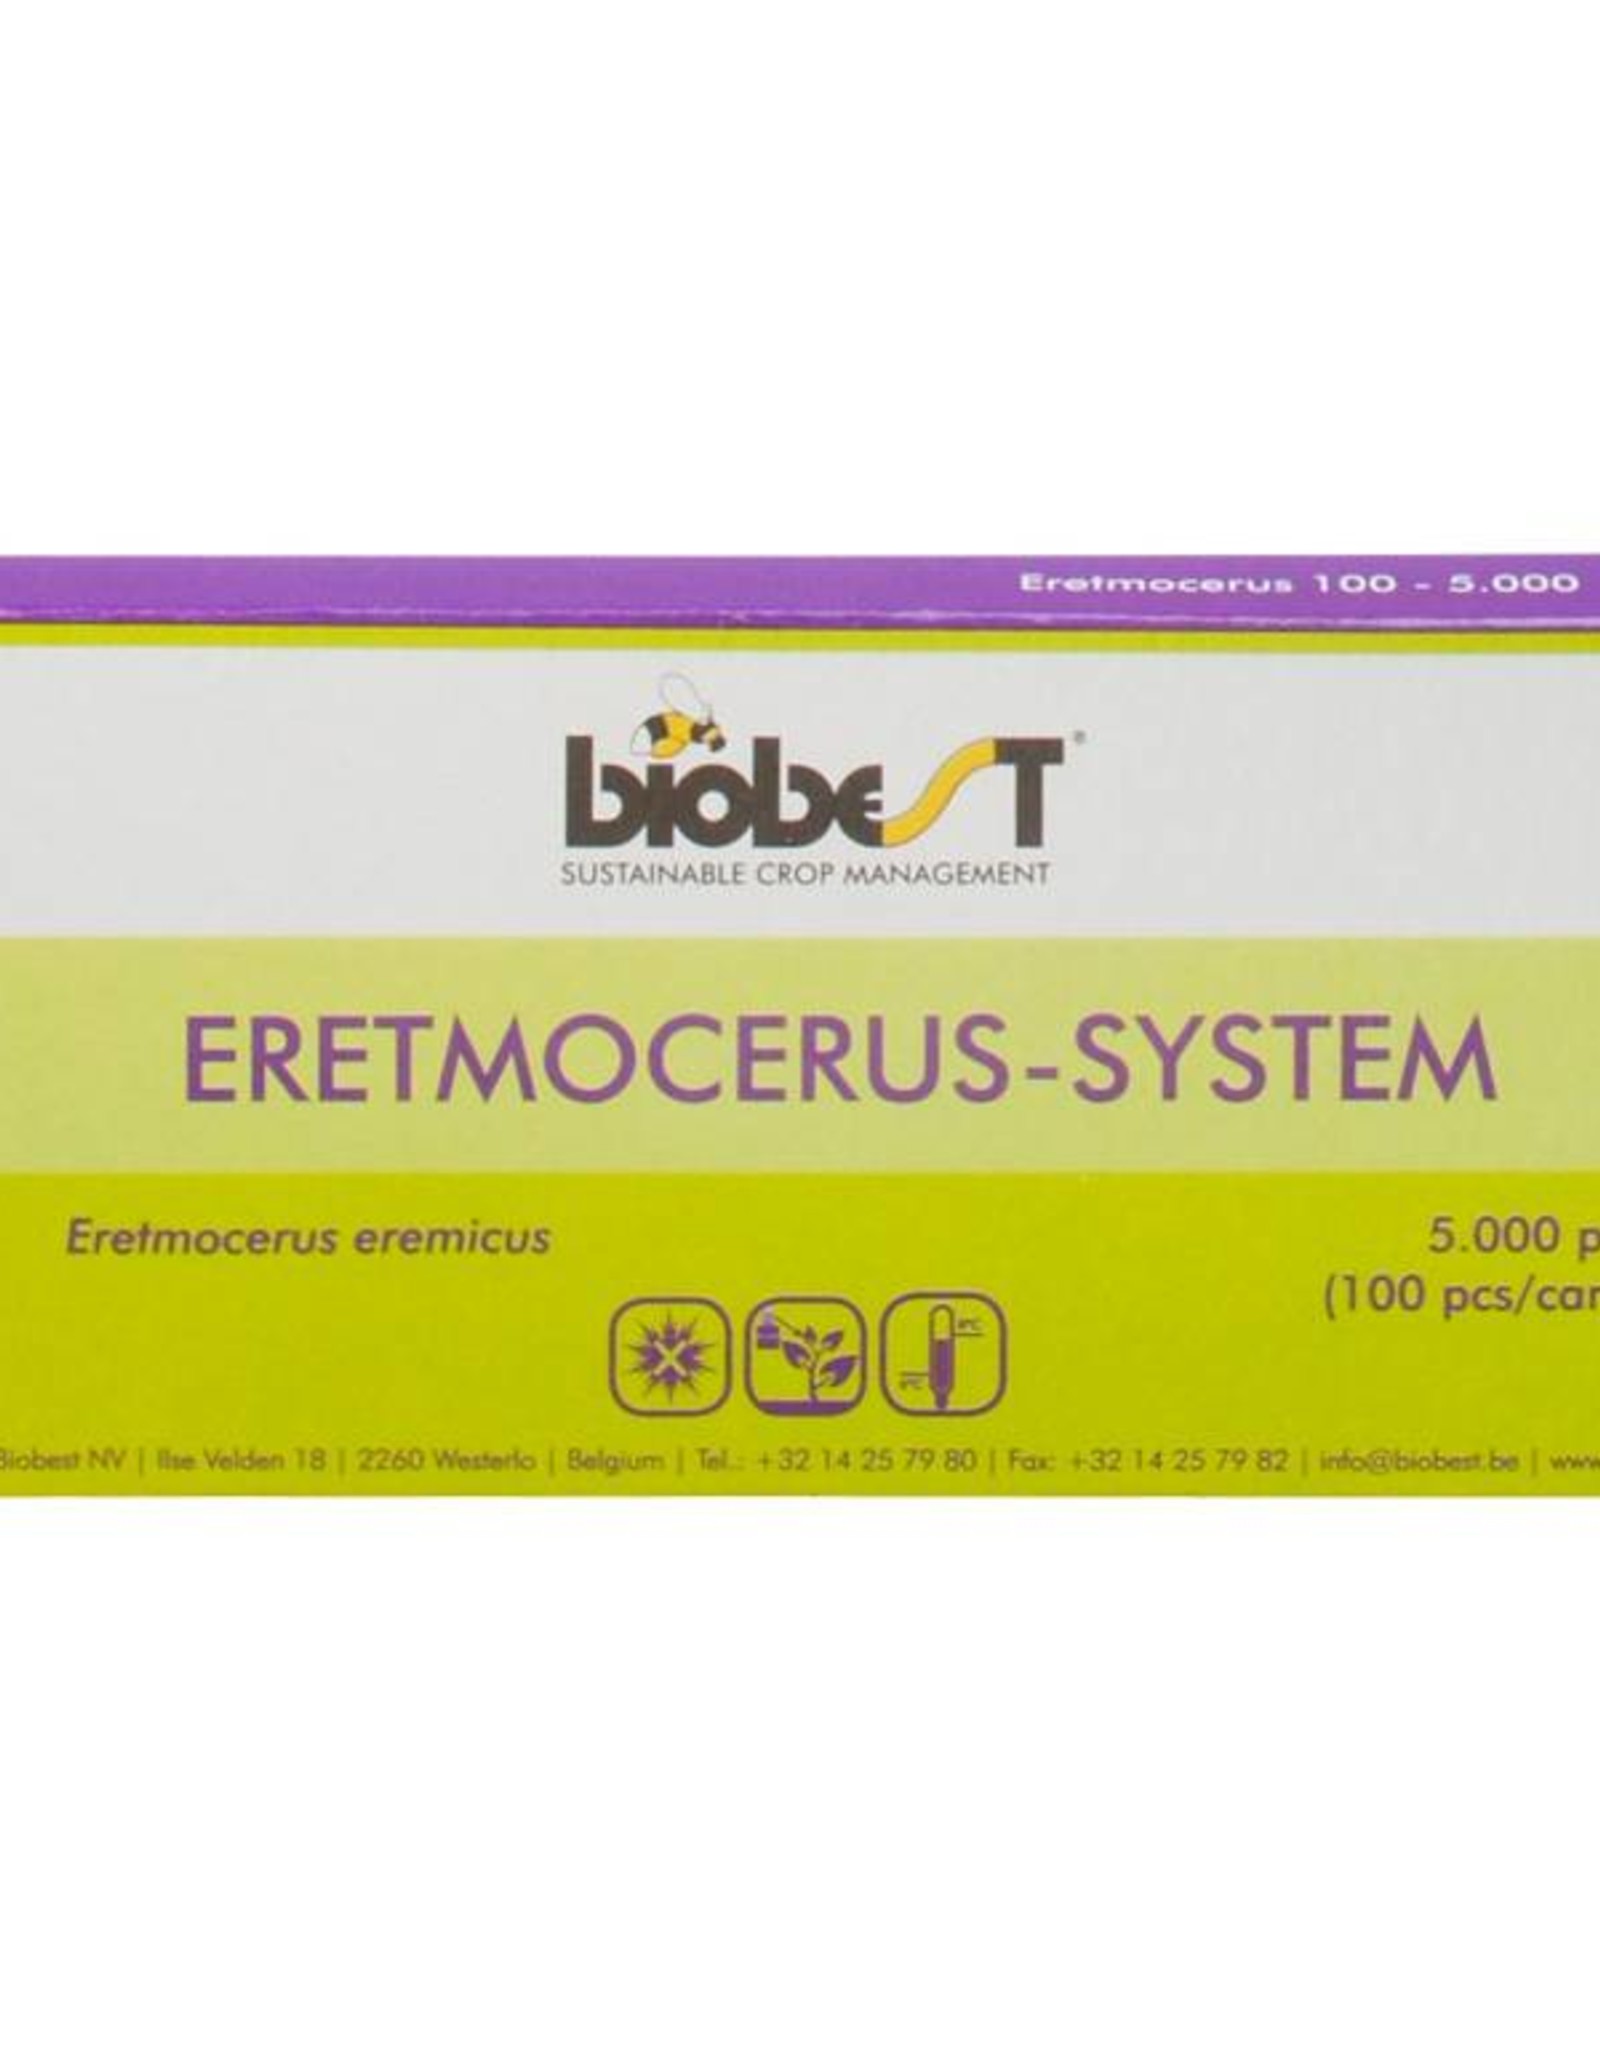 Brimex Biobest Sluipwesp Brimex Eretmocerus eremicus system